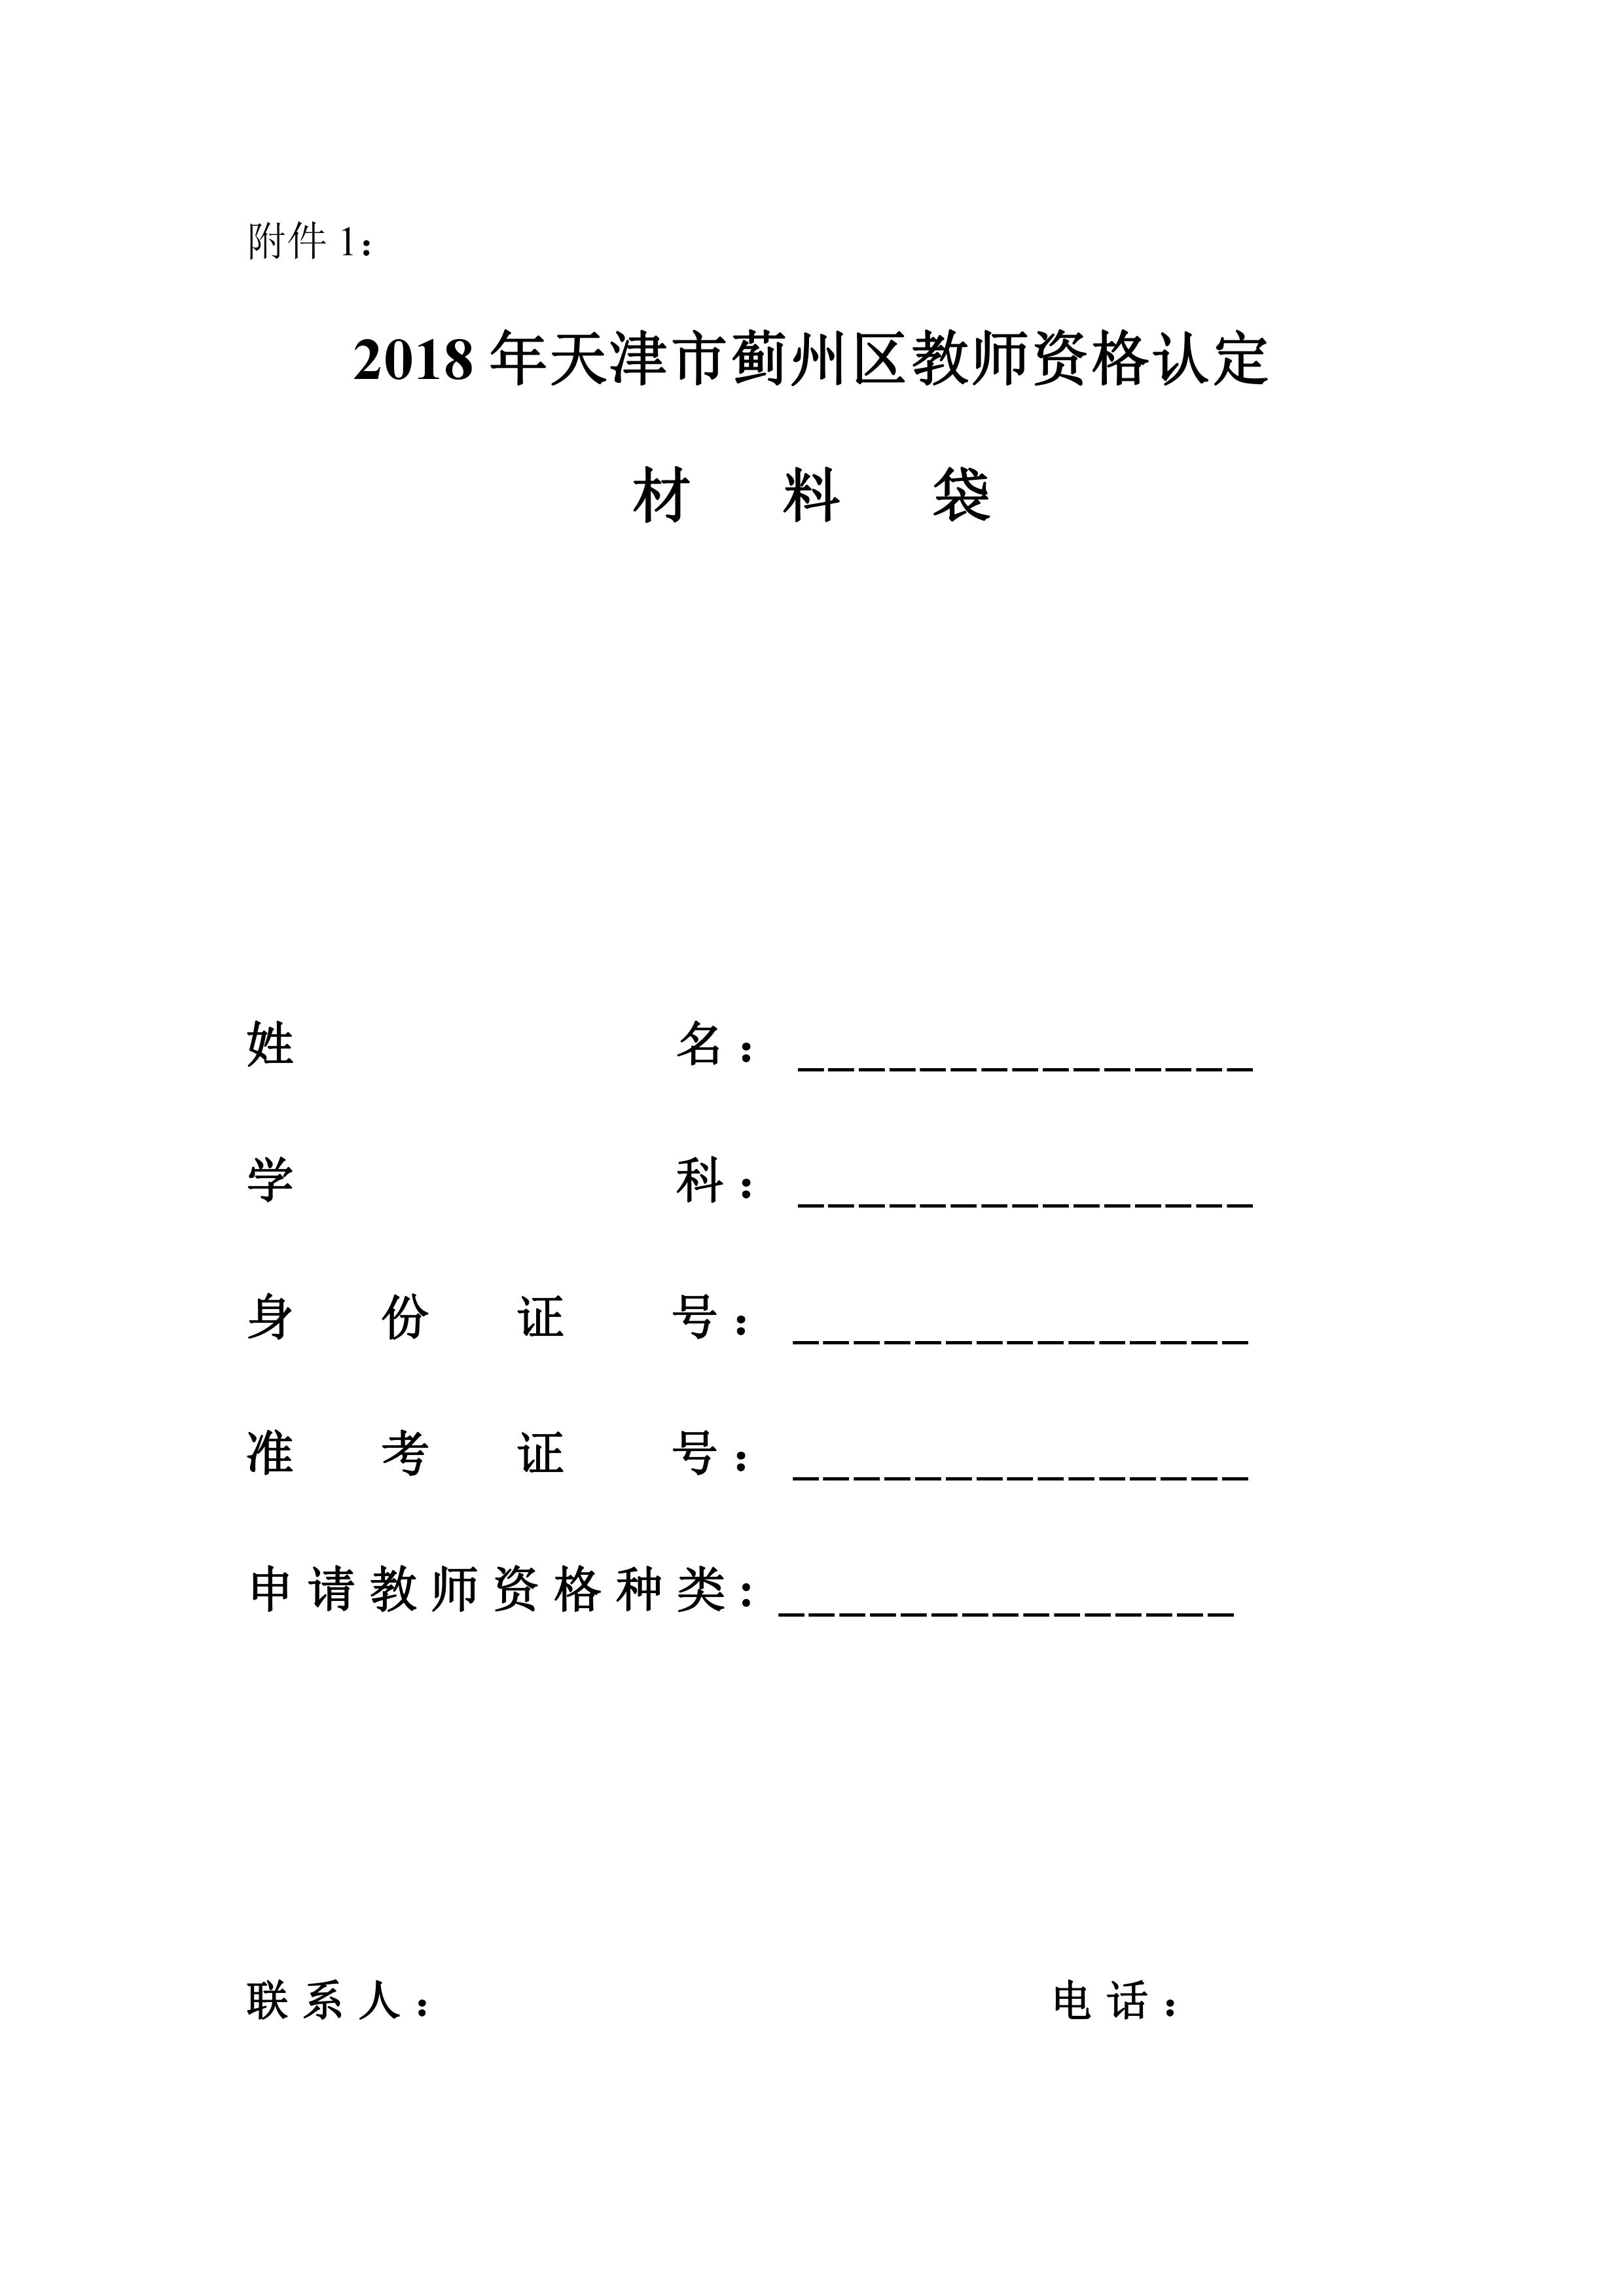 【通知】2018年天津市蓟州区教师资格认定阶